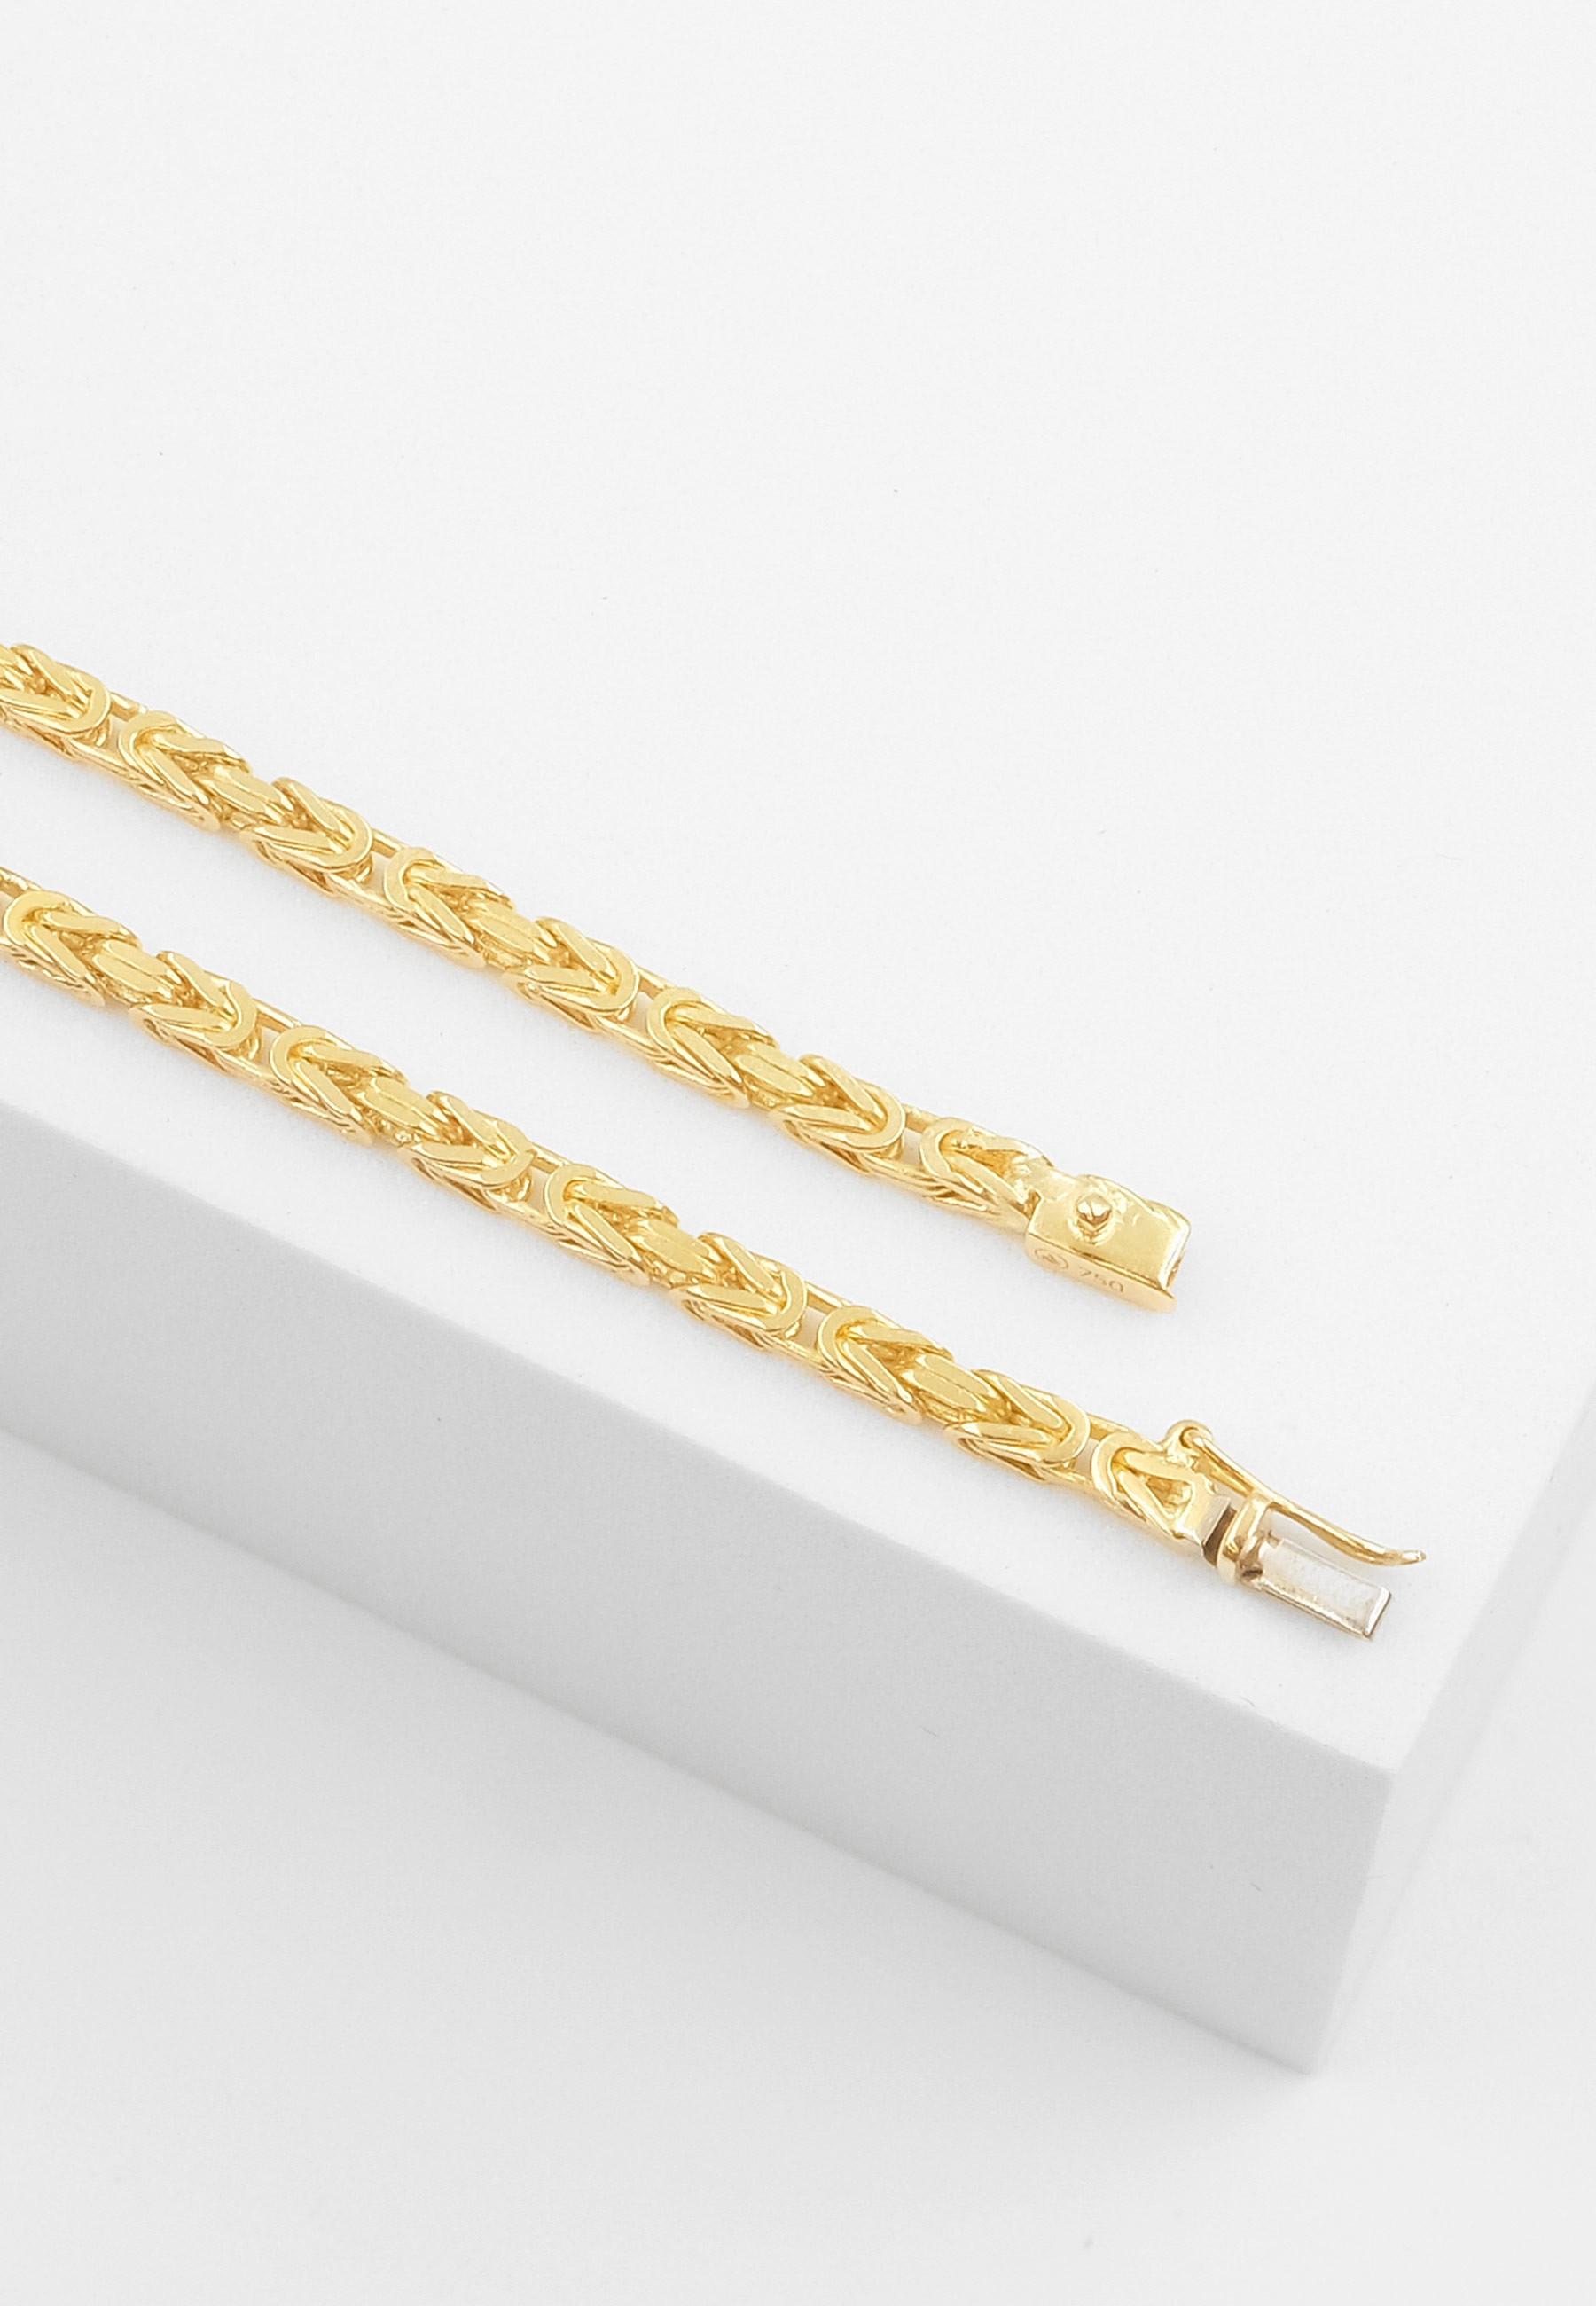 MUAU Schmuck  Bracelet chaine royale en or jaune 750, 2,3mm, 19cm 